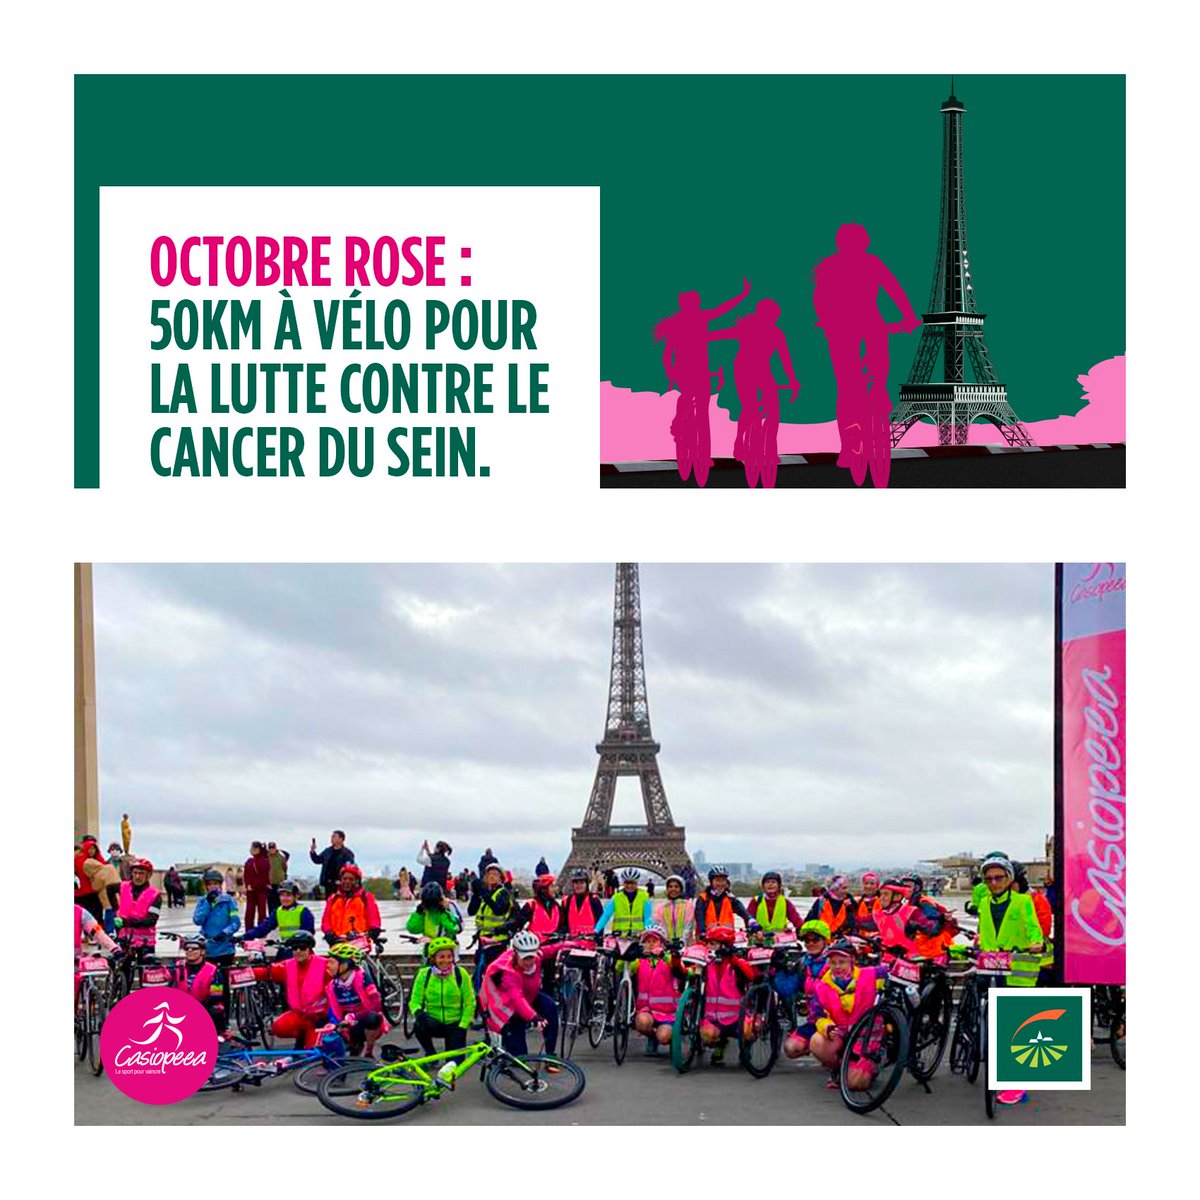 Ce dimanche a eu lieu la « Rando Vélo Rose » organisée par @CasiopeeaFrance à l’occasion d’Octobre rose ! Une balade de 50km entre Paris et Marcoussis qui a rassemblé 100 participantes. Groupama félicite toutes les femmes ayant participé à l’évènement ! 🚴♀💪#octobrerose